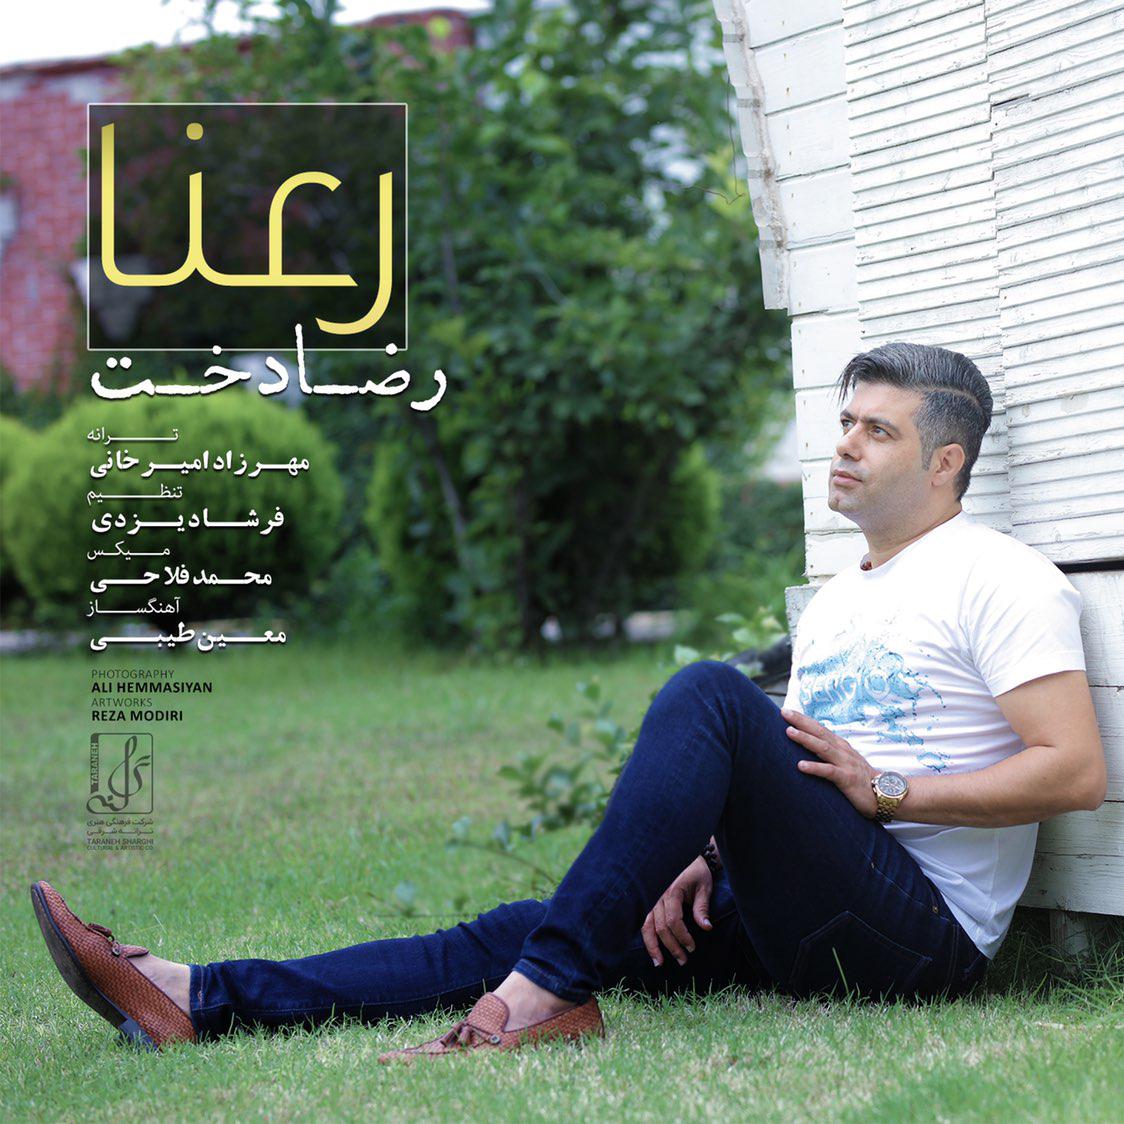  دانلود آهنگ جدید رضا دخت - رعنا | Download New Music By Reza Dokht - Ranaa